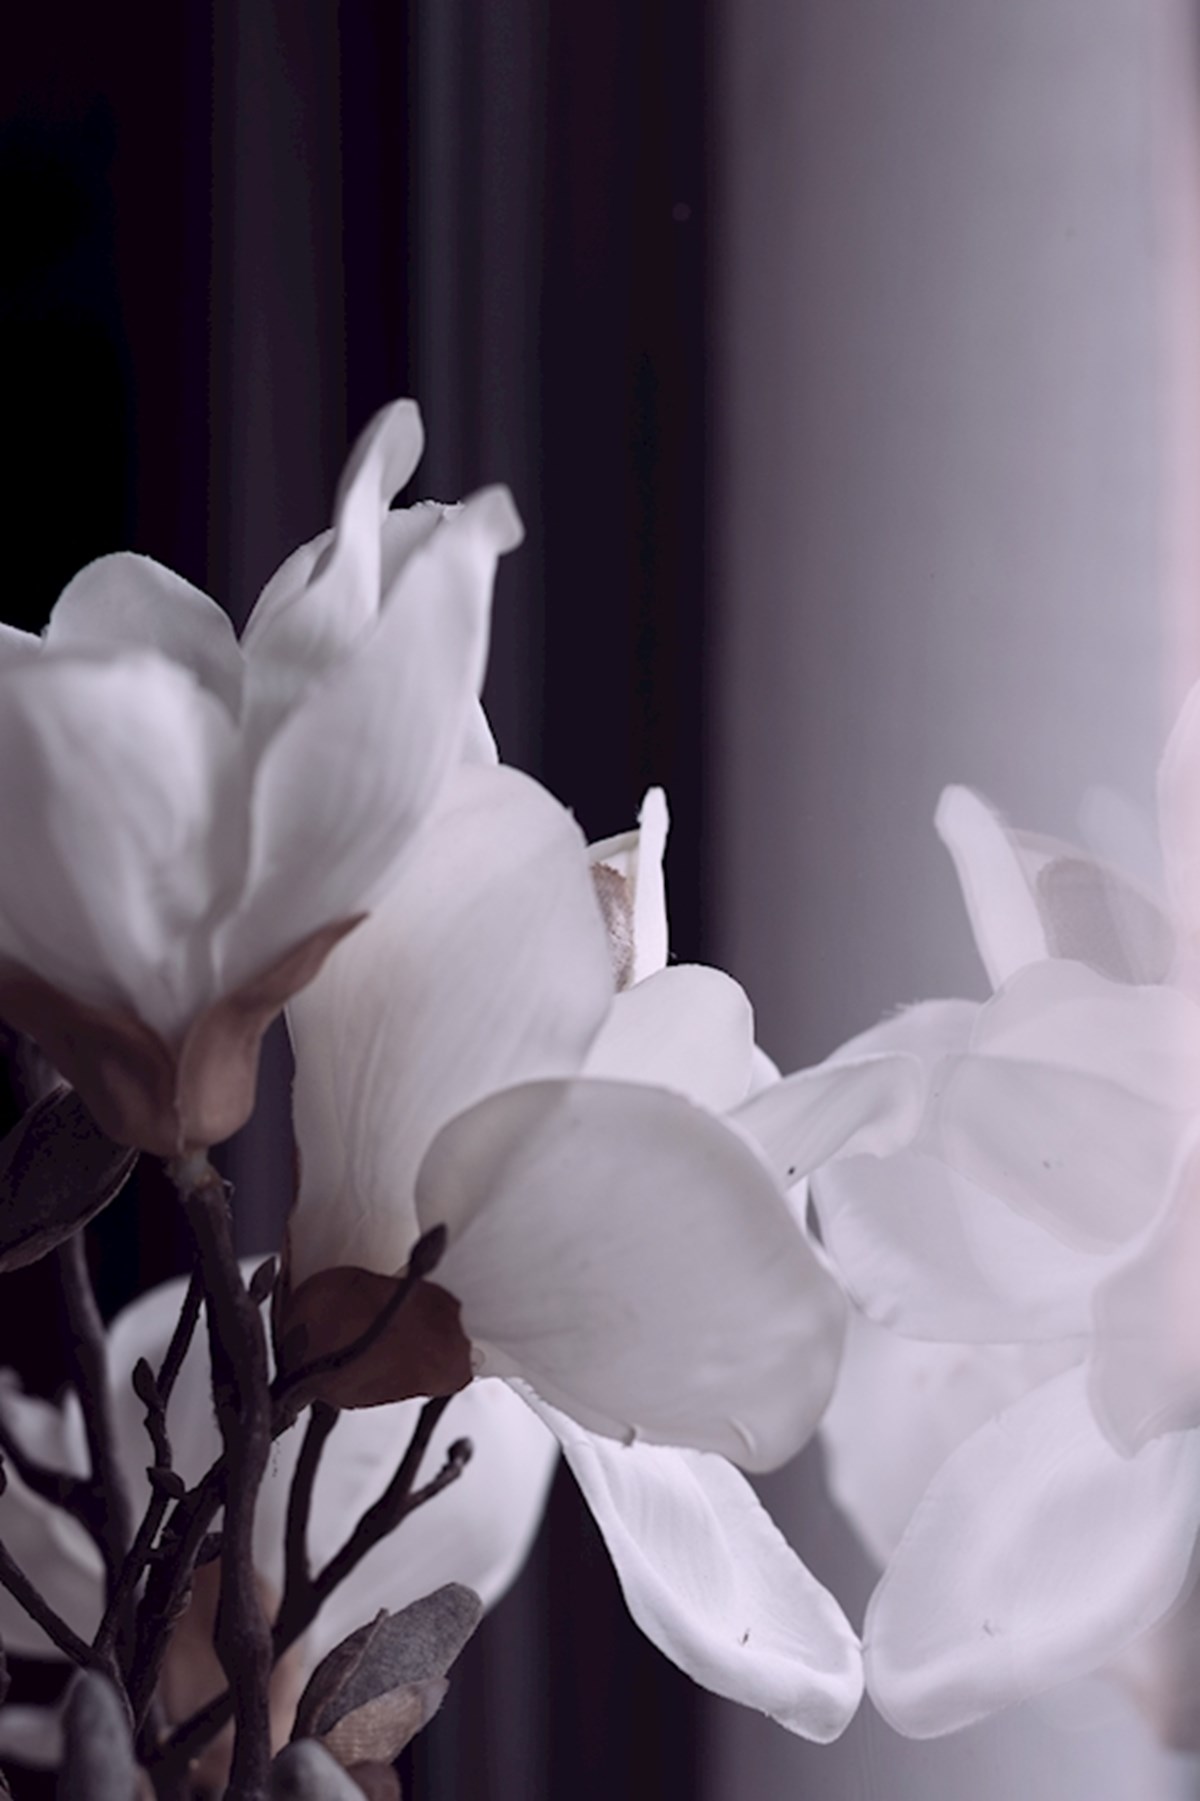 Tag væk Odysseus interpersonel Hvide blomster plakat af Annika Bäcker - Printler